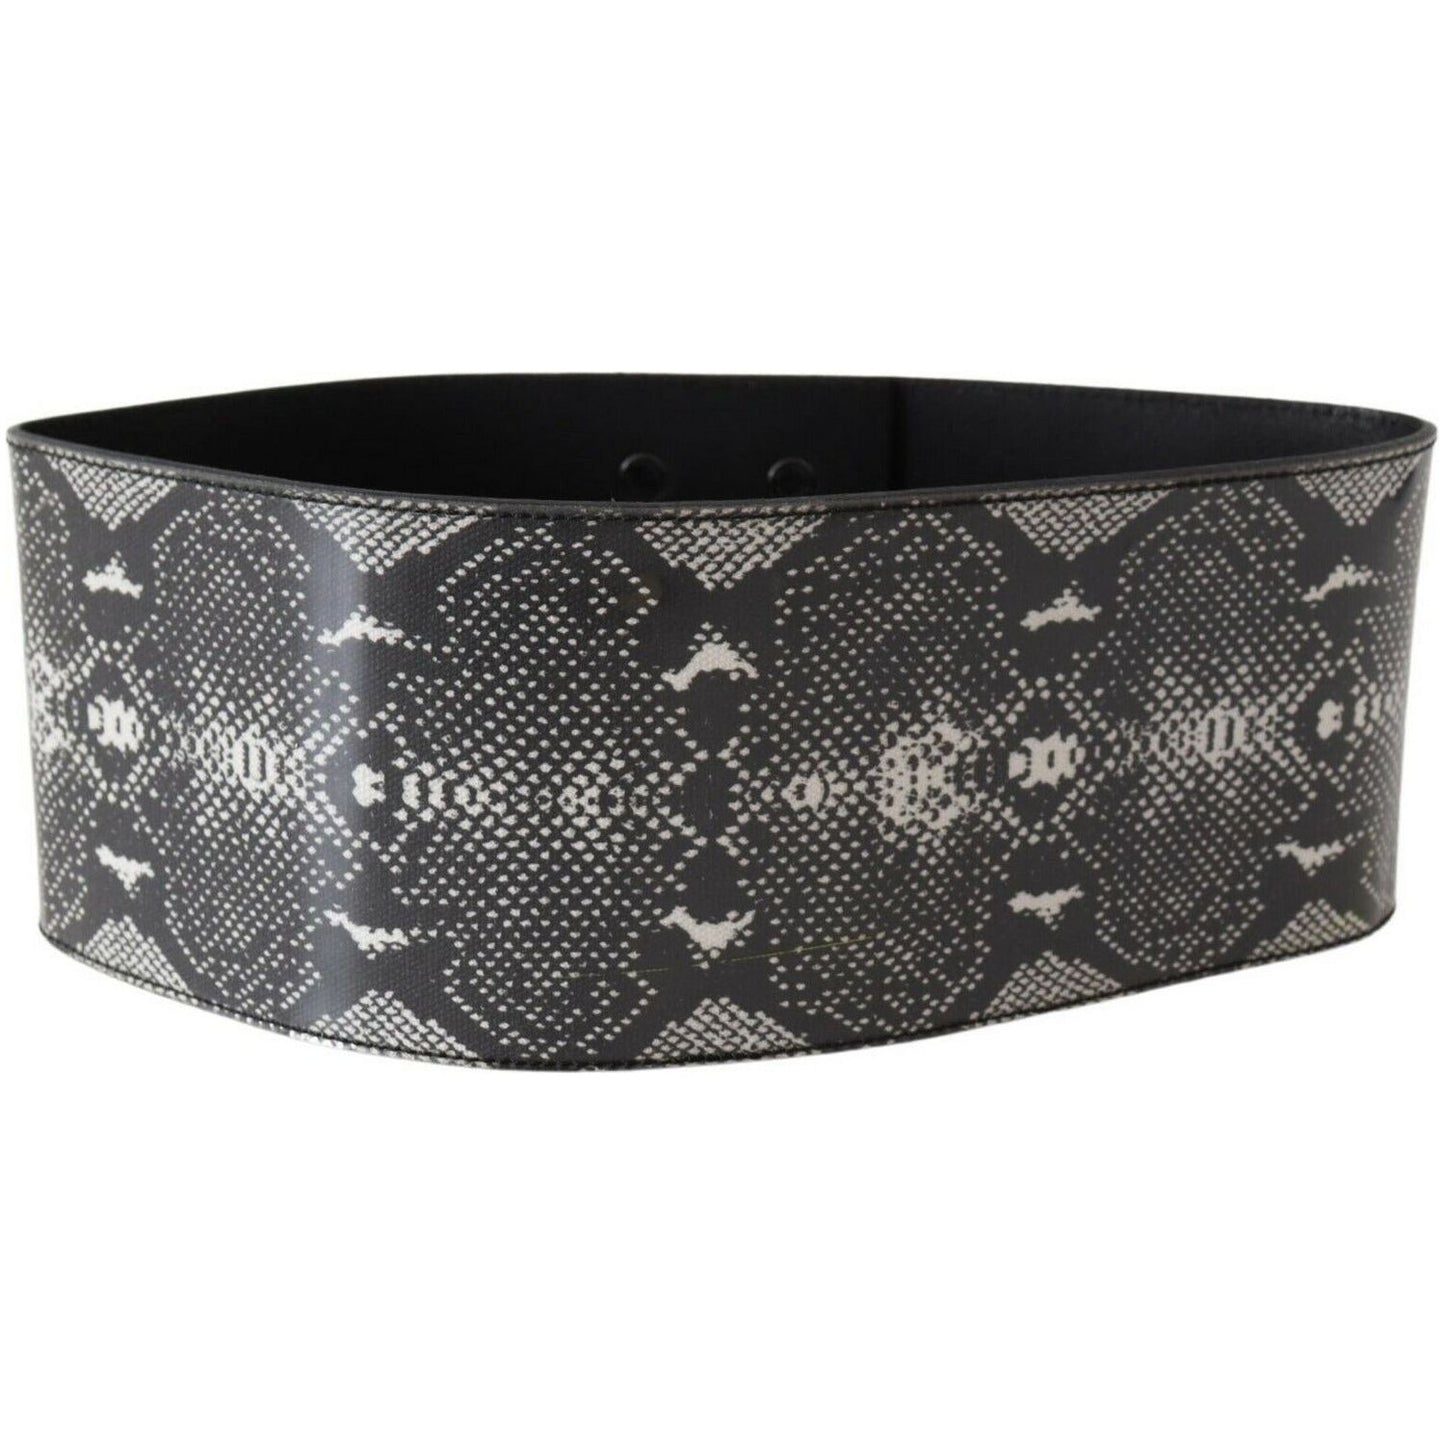 Ermanno Scervino Classic Snakeskin Motif Leather Belt black-wide-leather-snakeskin-design-waist-belt WOMAN BELTS s-l1600-2022-08-18T114459.561-1899c99b-c52.jpg